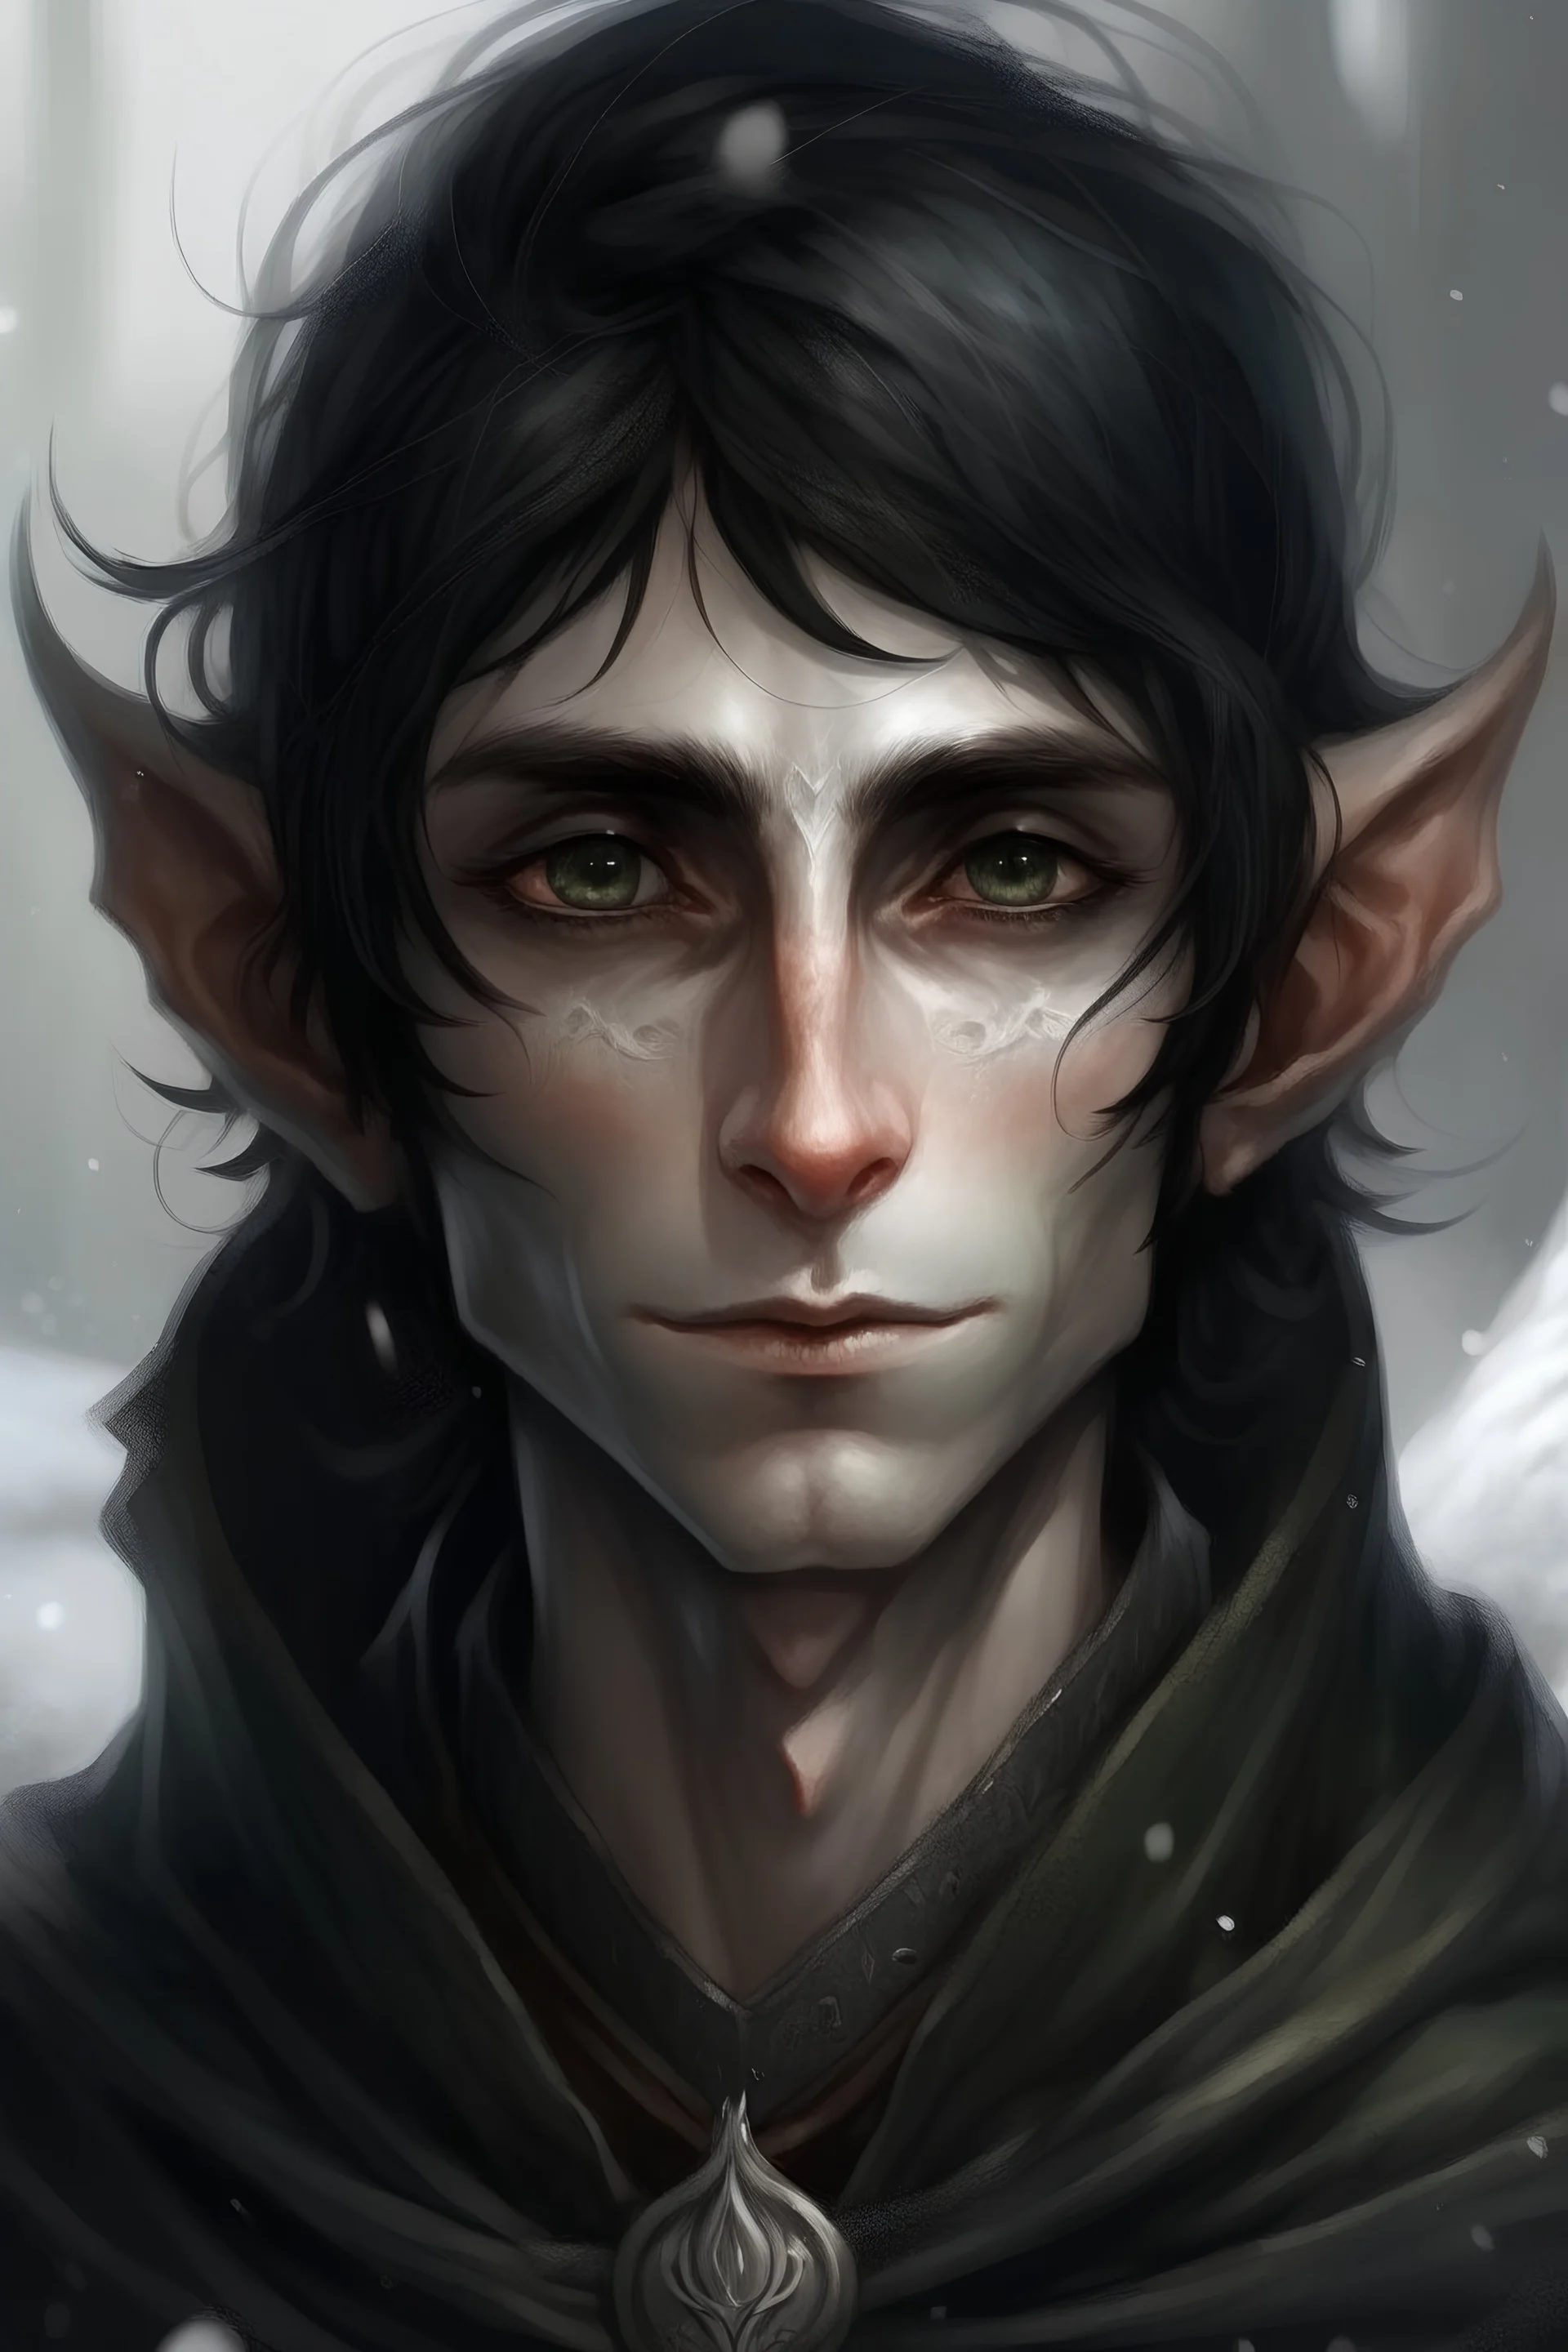 27 years old elf guy, messy black hair, ice eyes